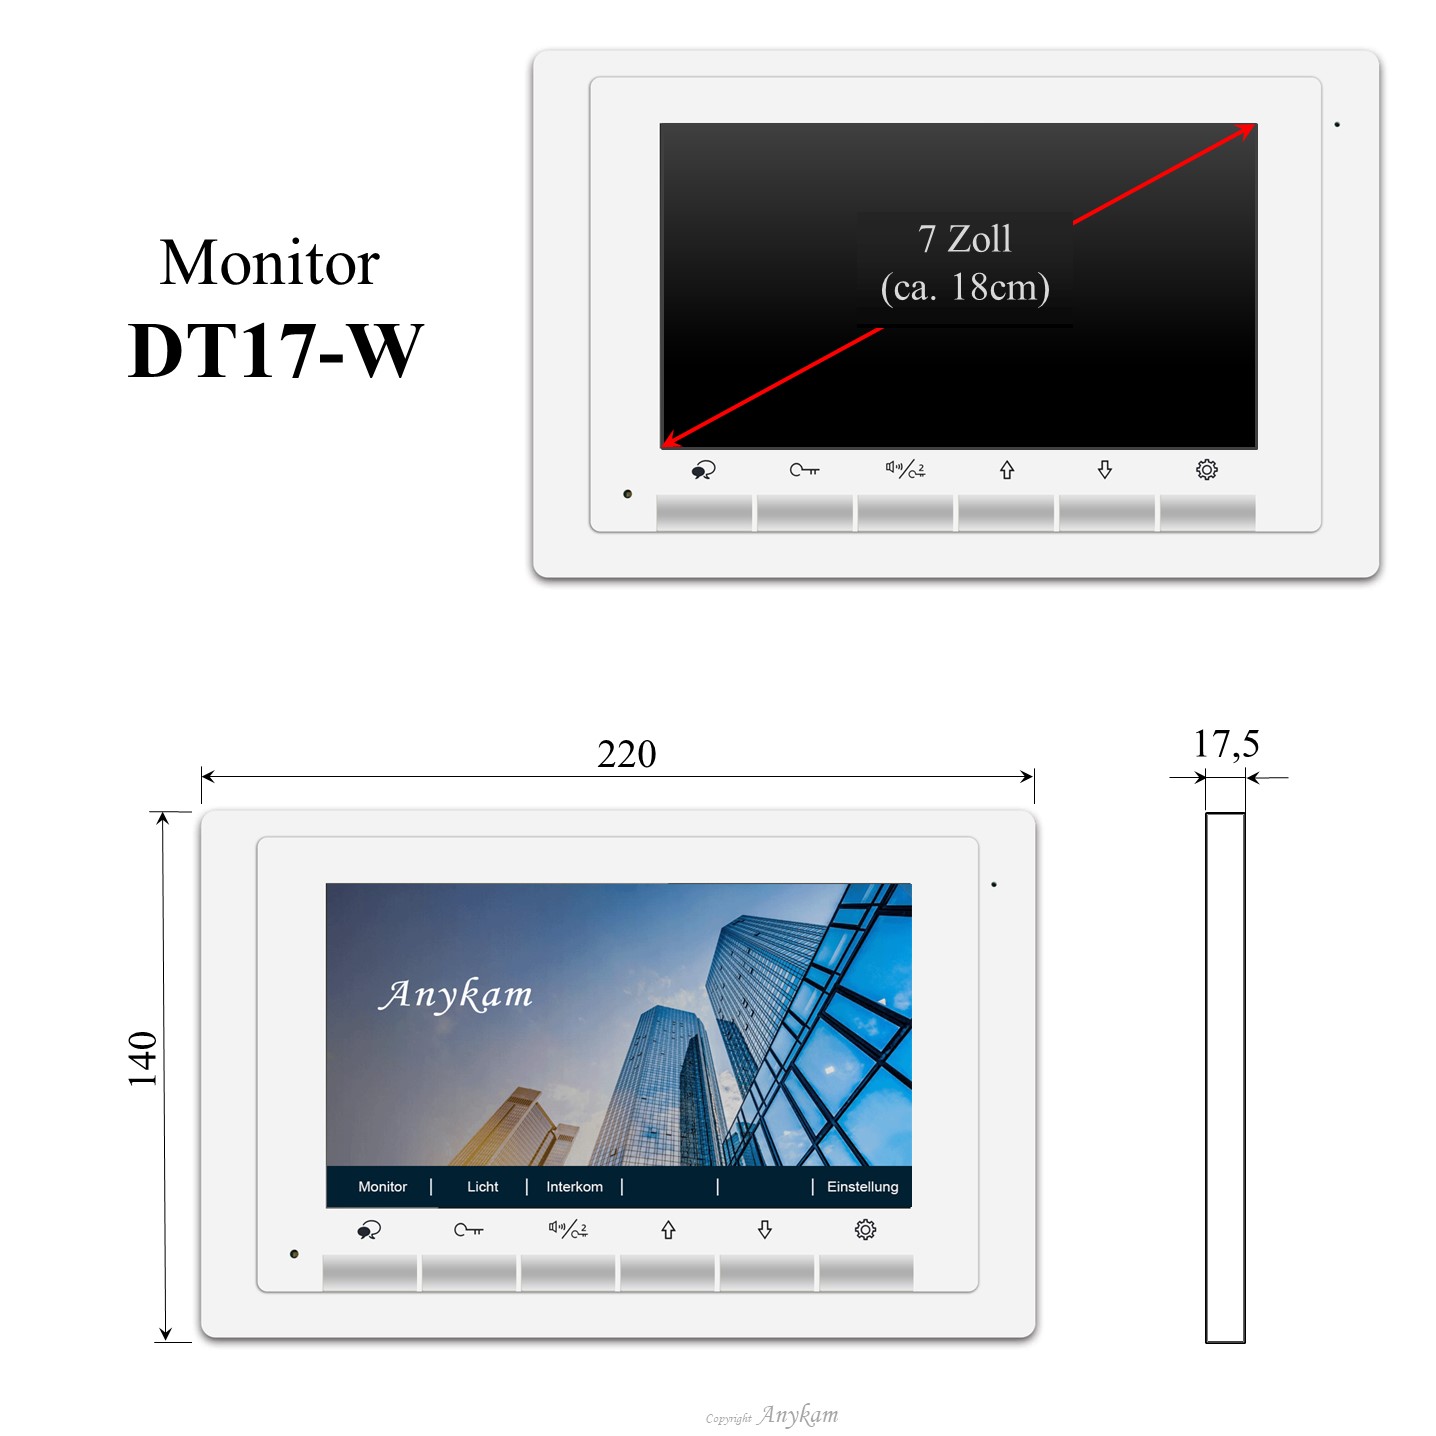 Monitor DT17-W, Innenstation der Videosprechanlage mit 2Draht Technik